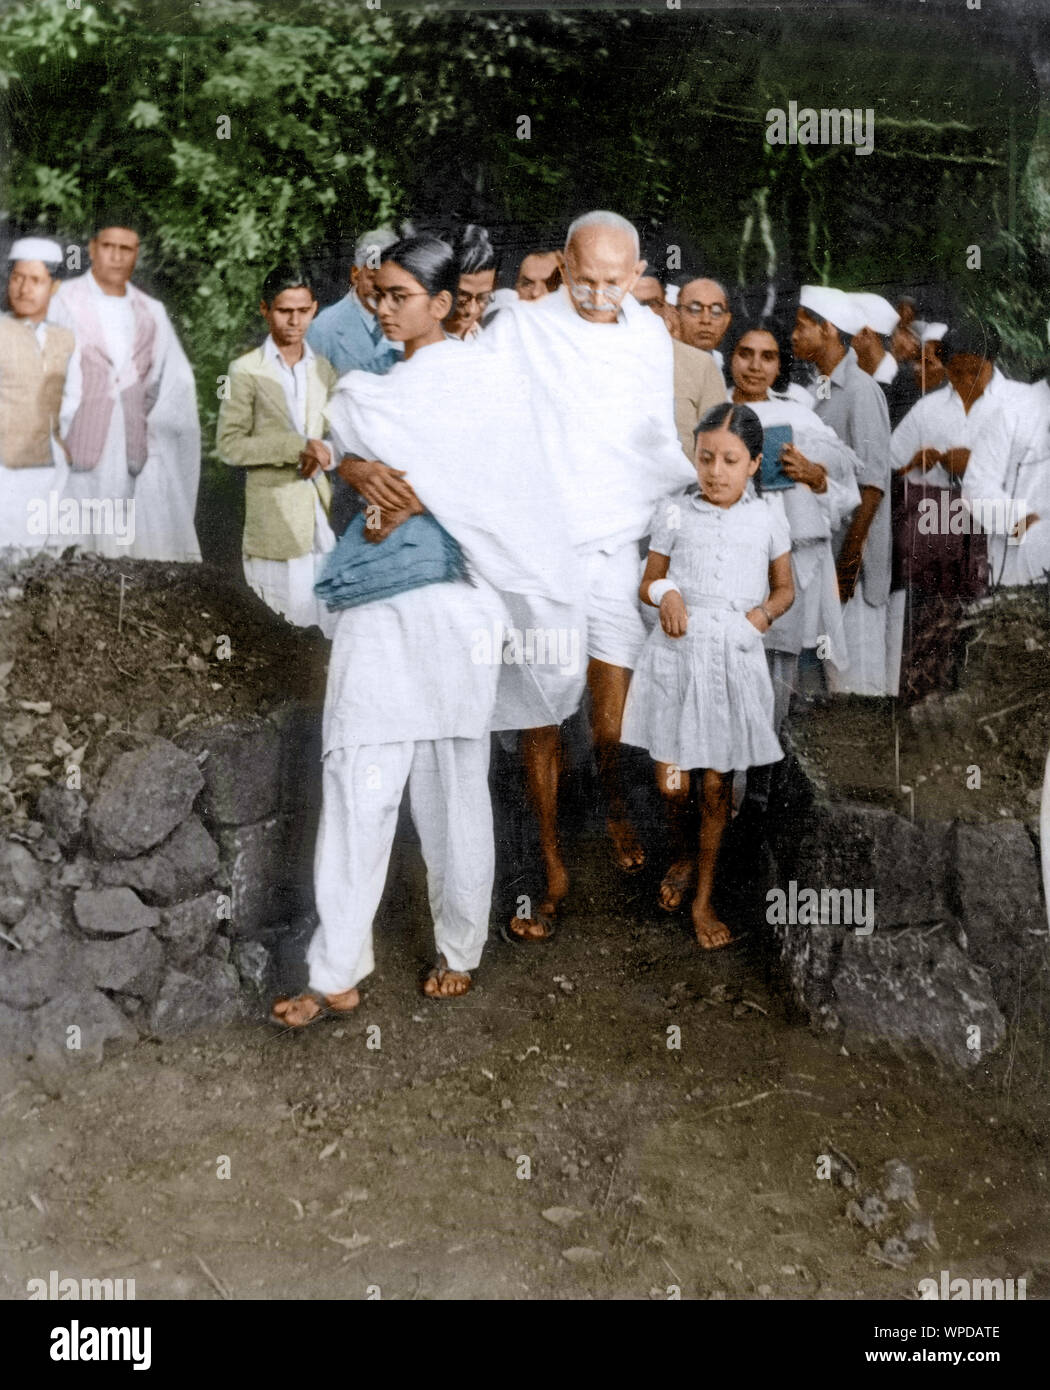 Mahatma Gandhi and others walking, India, Asia, 1938 Stock Photo